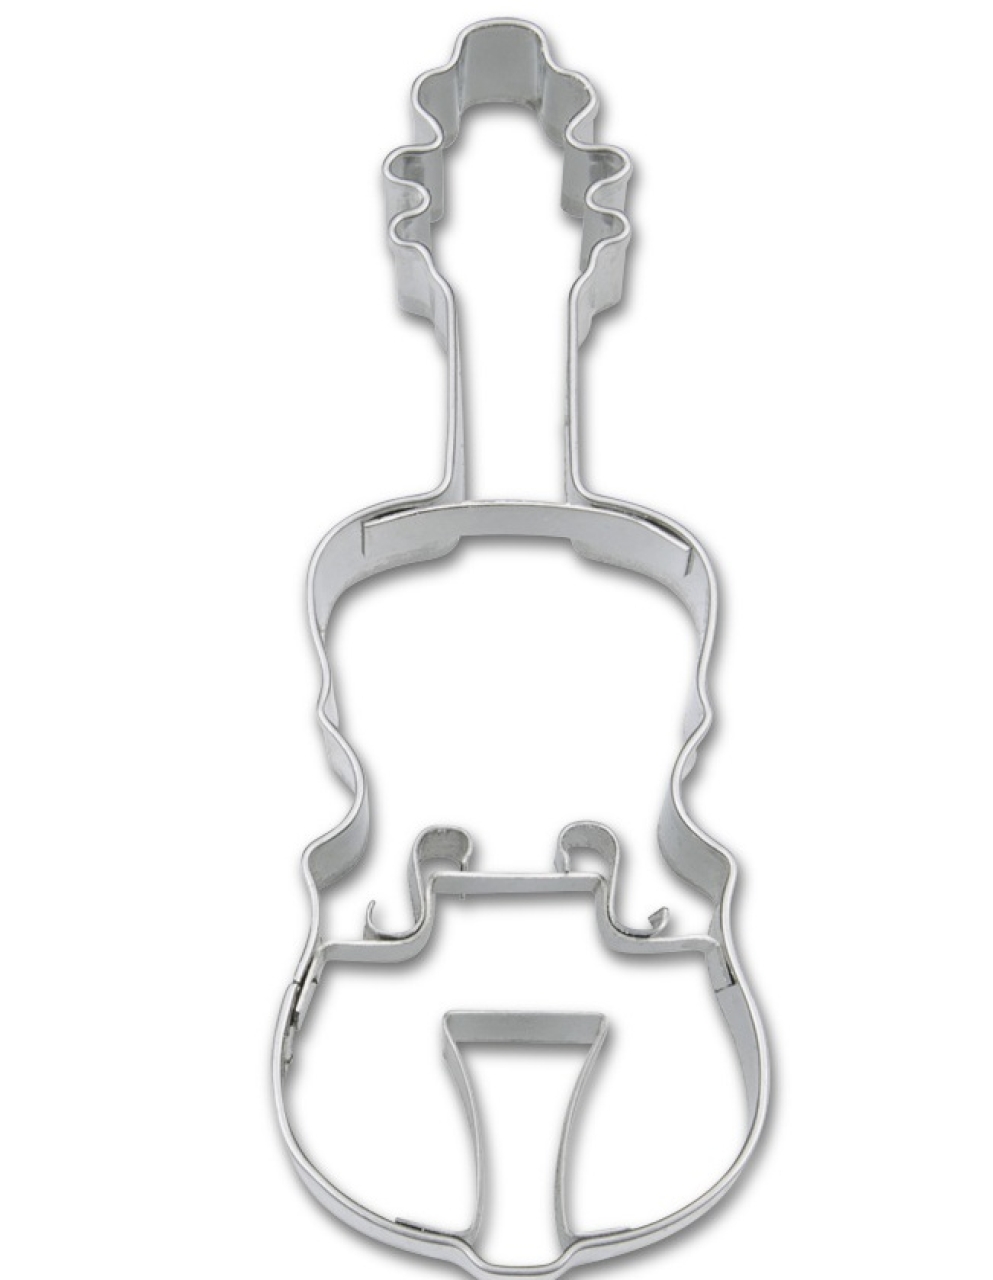 Städter Keks-Ausstecher 'Geige' 8,5 cm aus Edelstahl